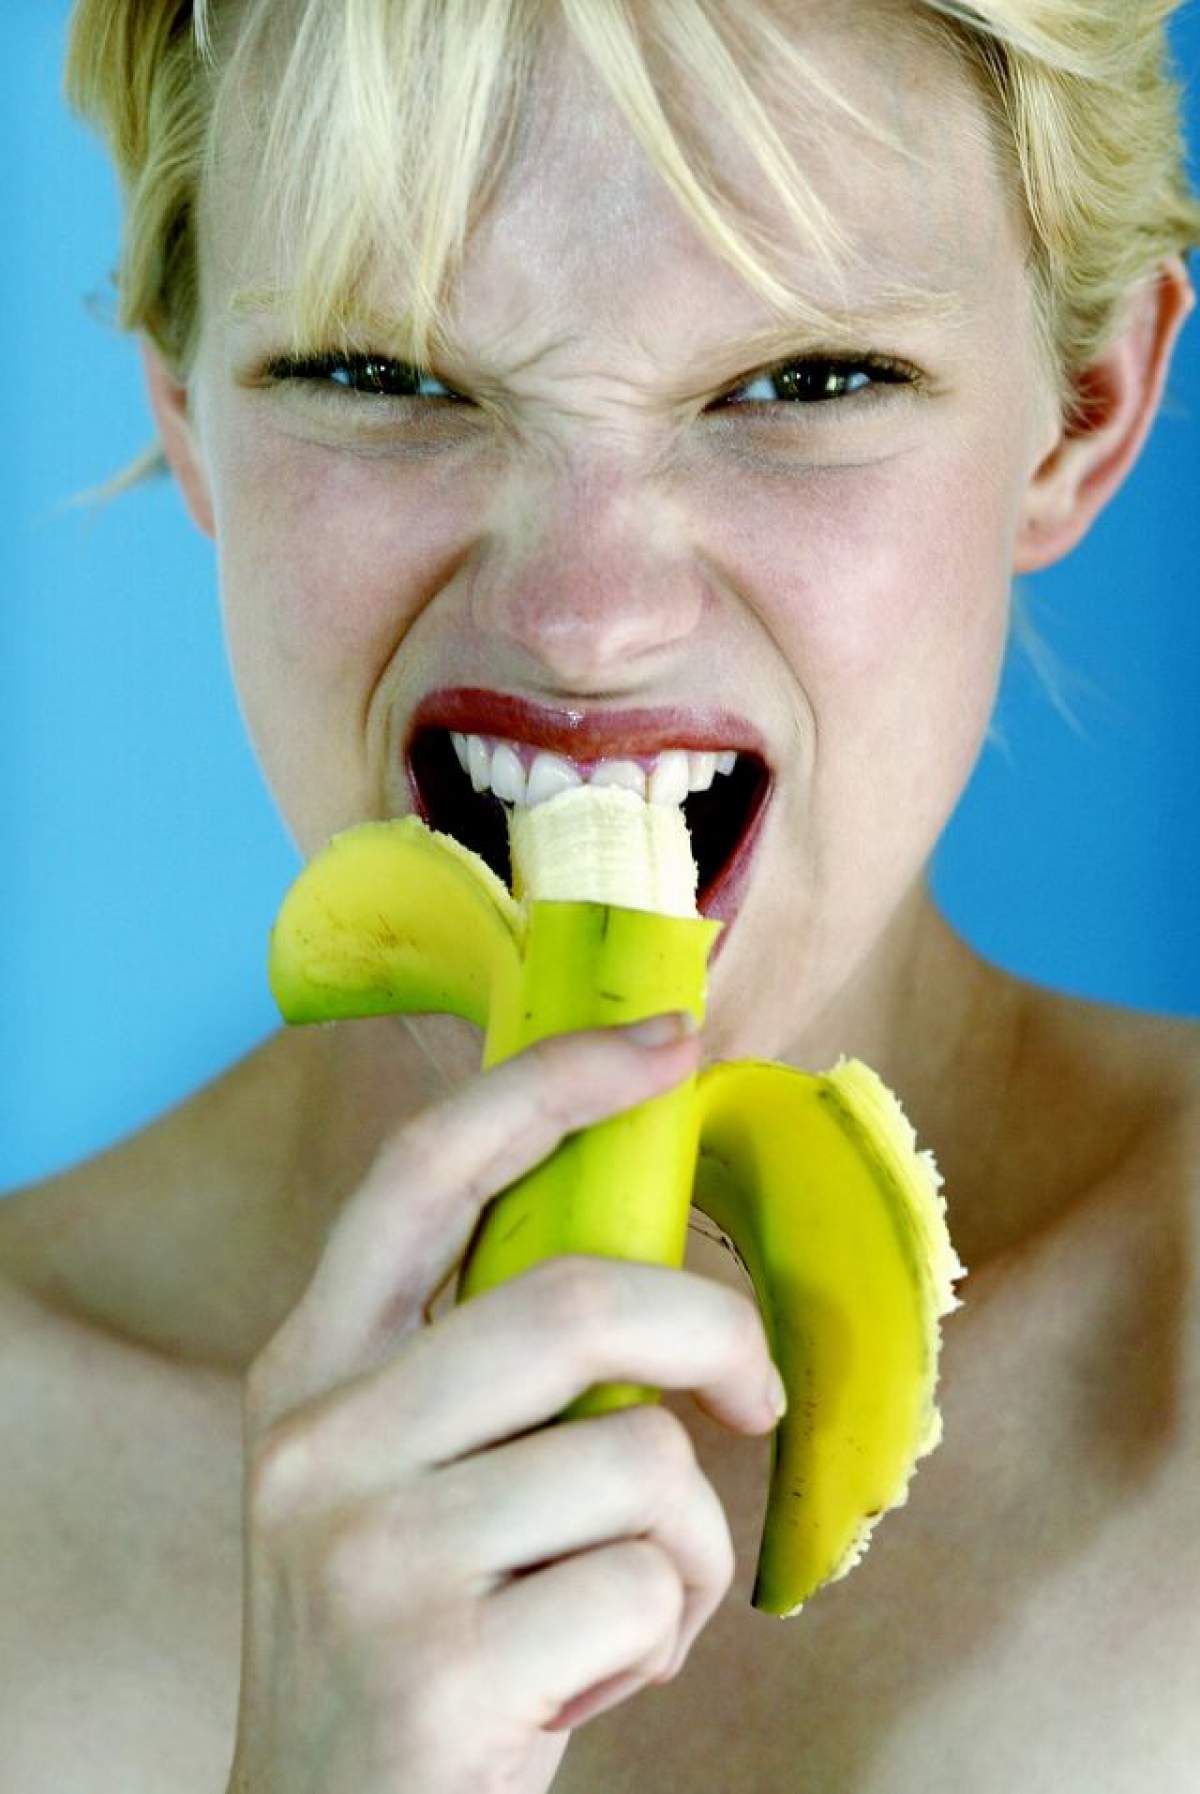 Dieta cu banane te ajută să slăbeşti fără să-ţi fie foame! Cum este posibil